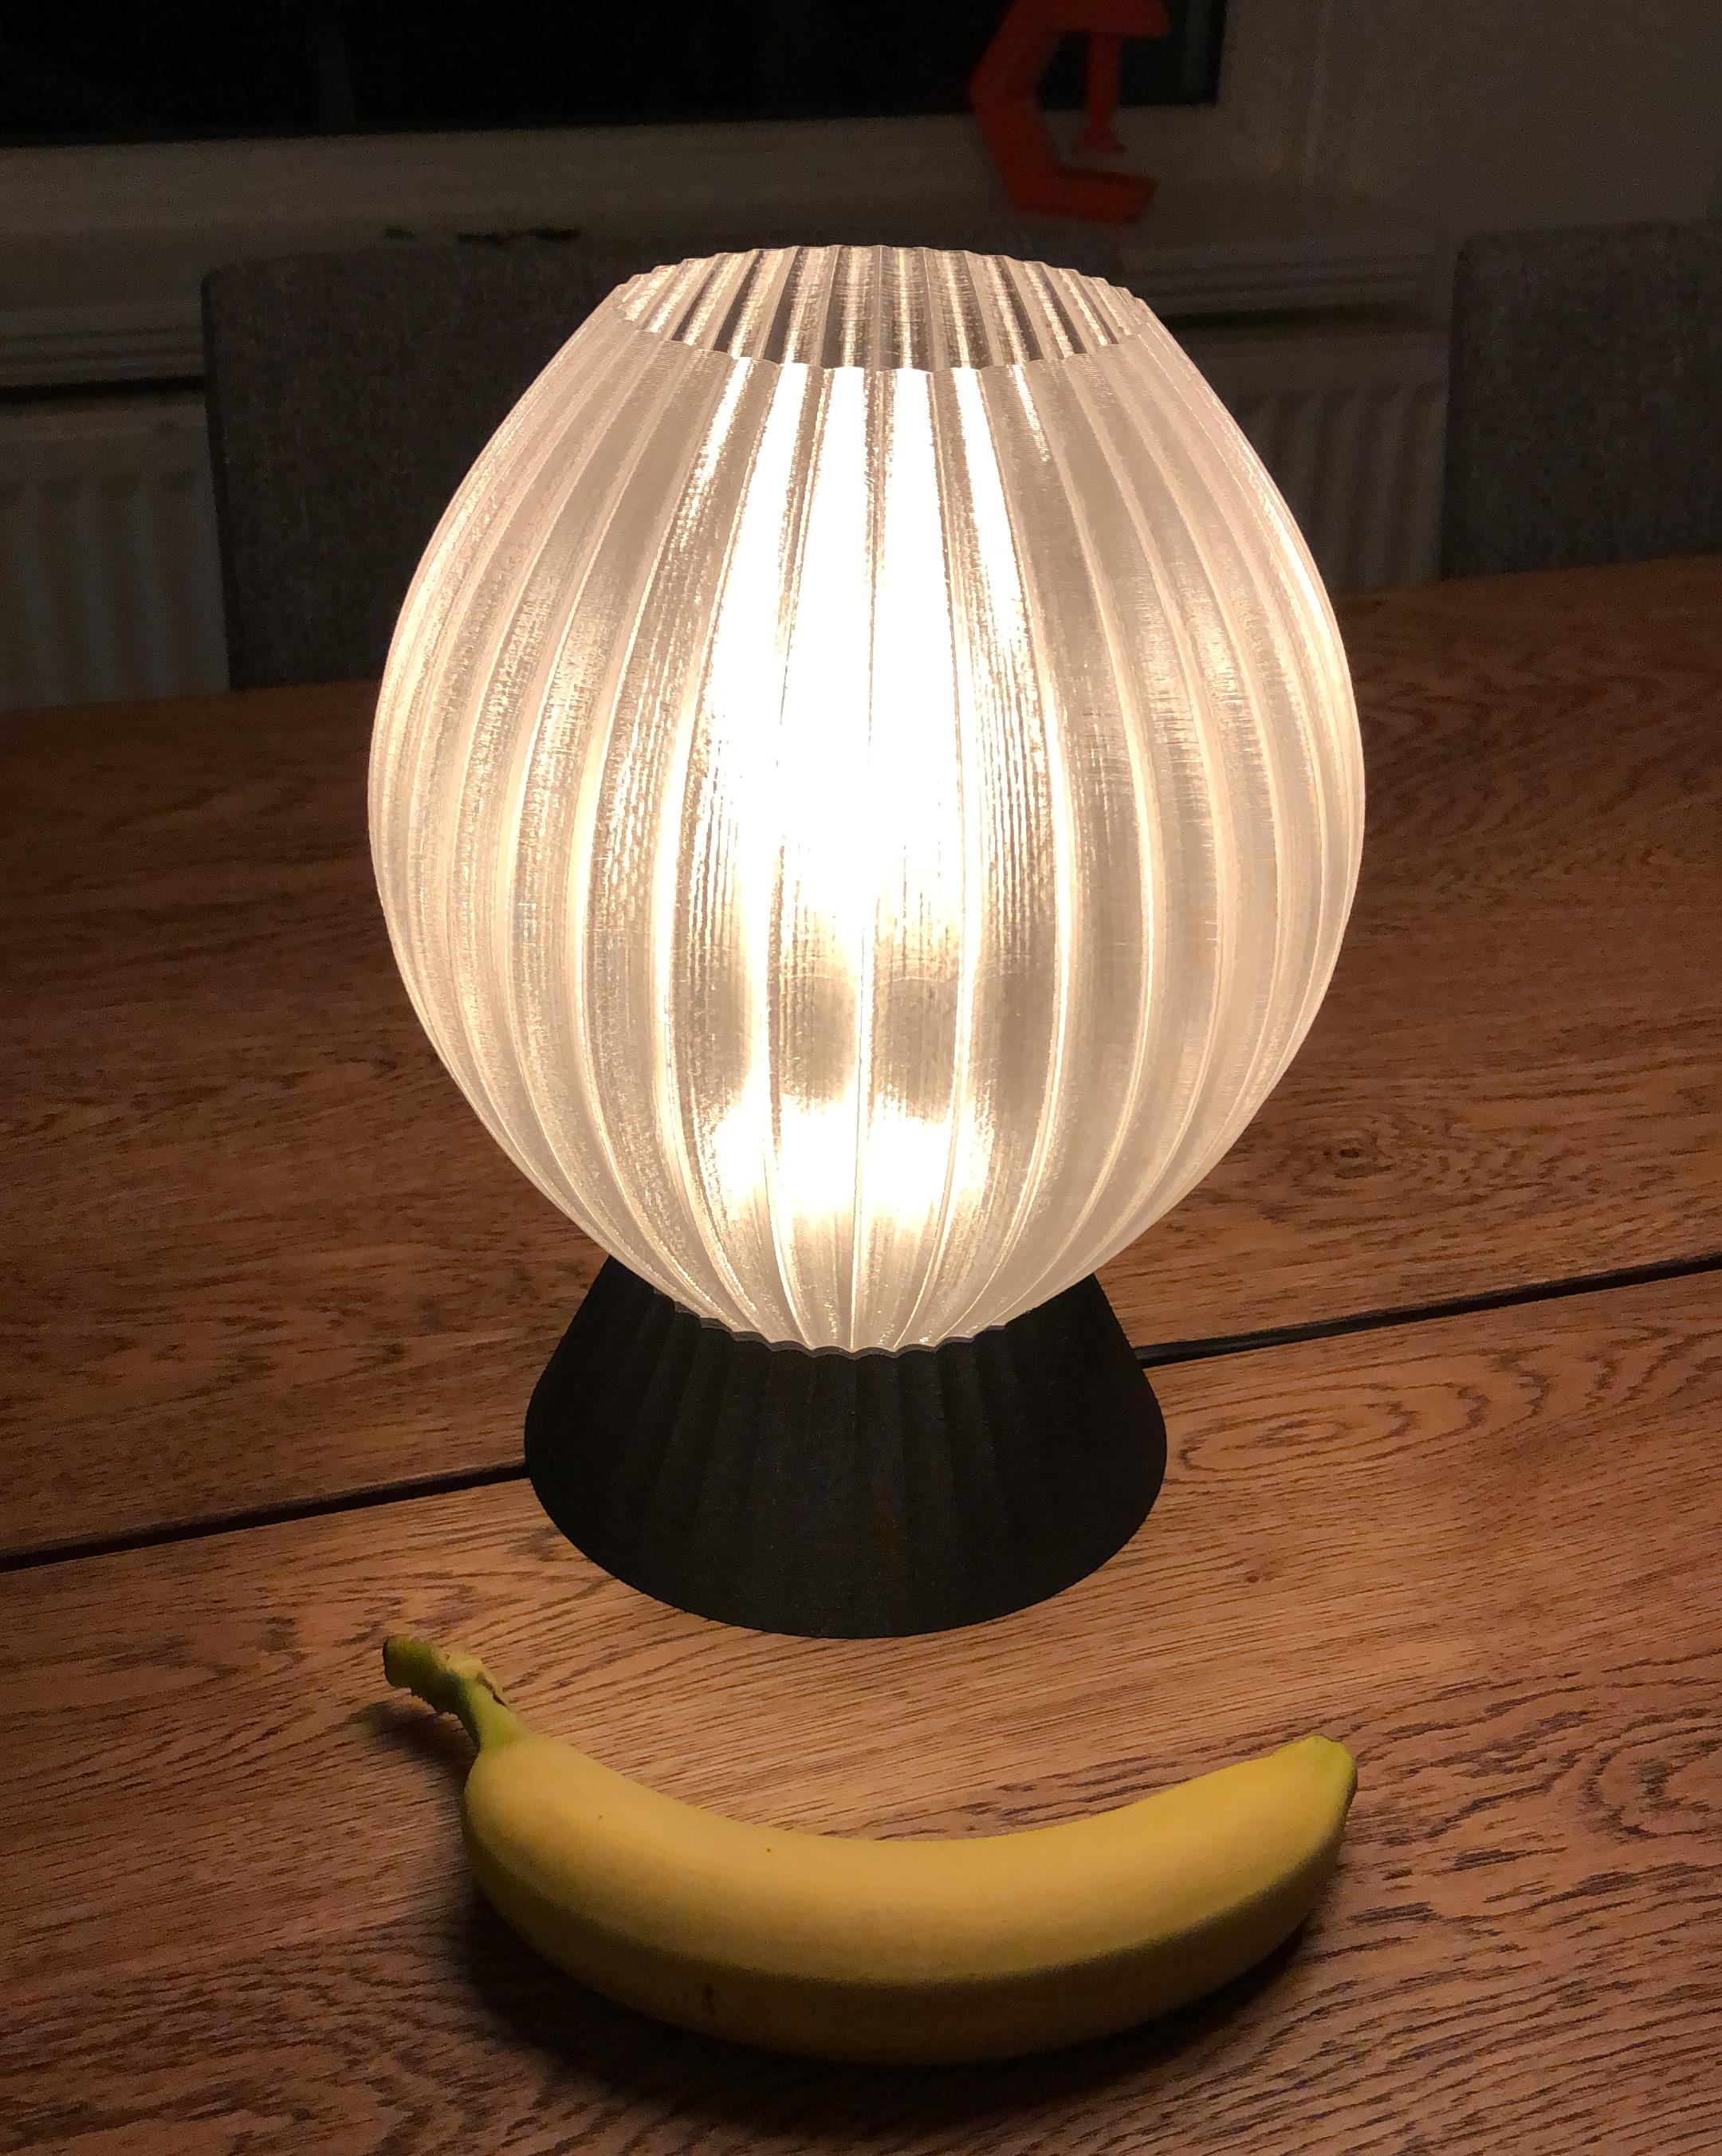 3D printed lampshade